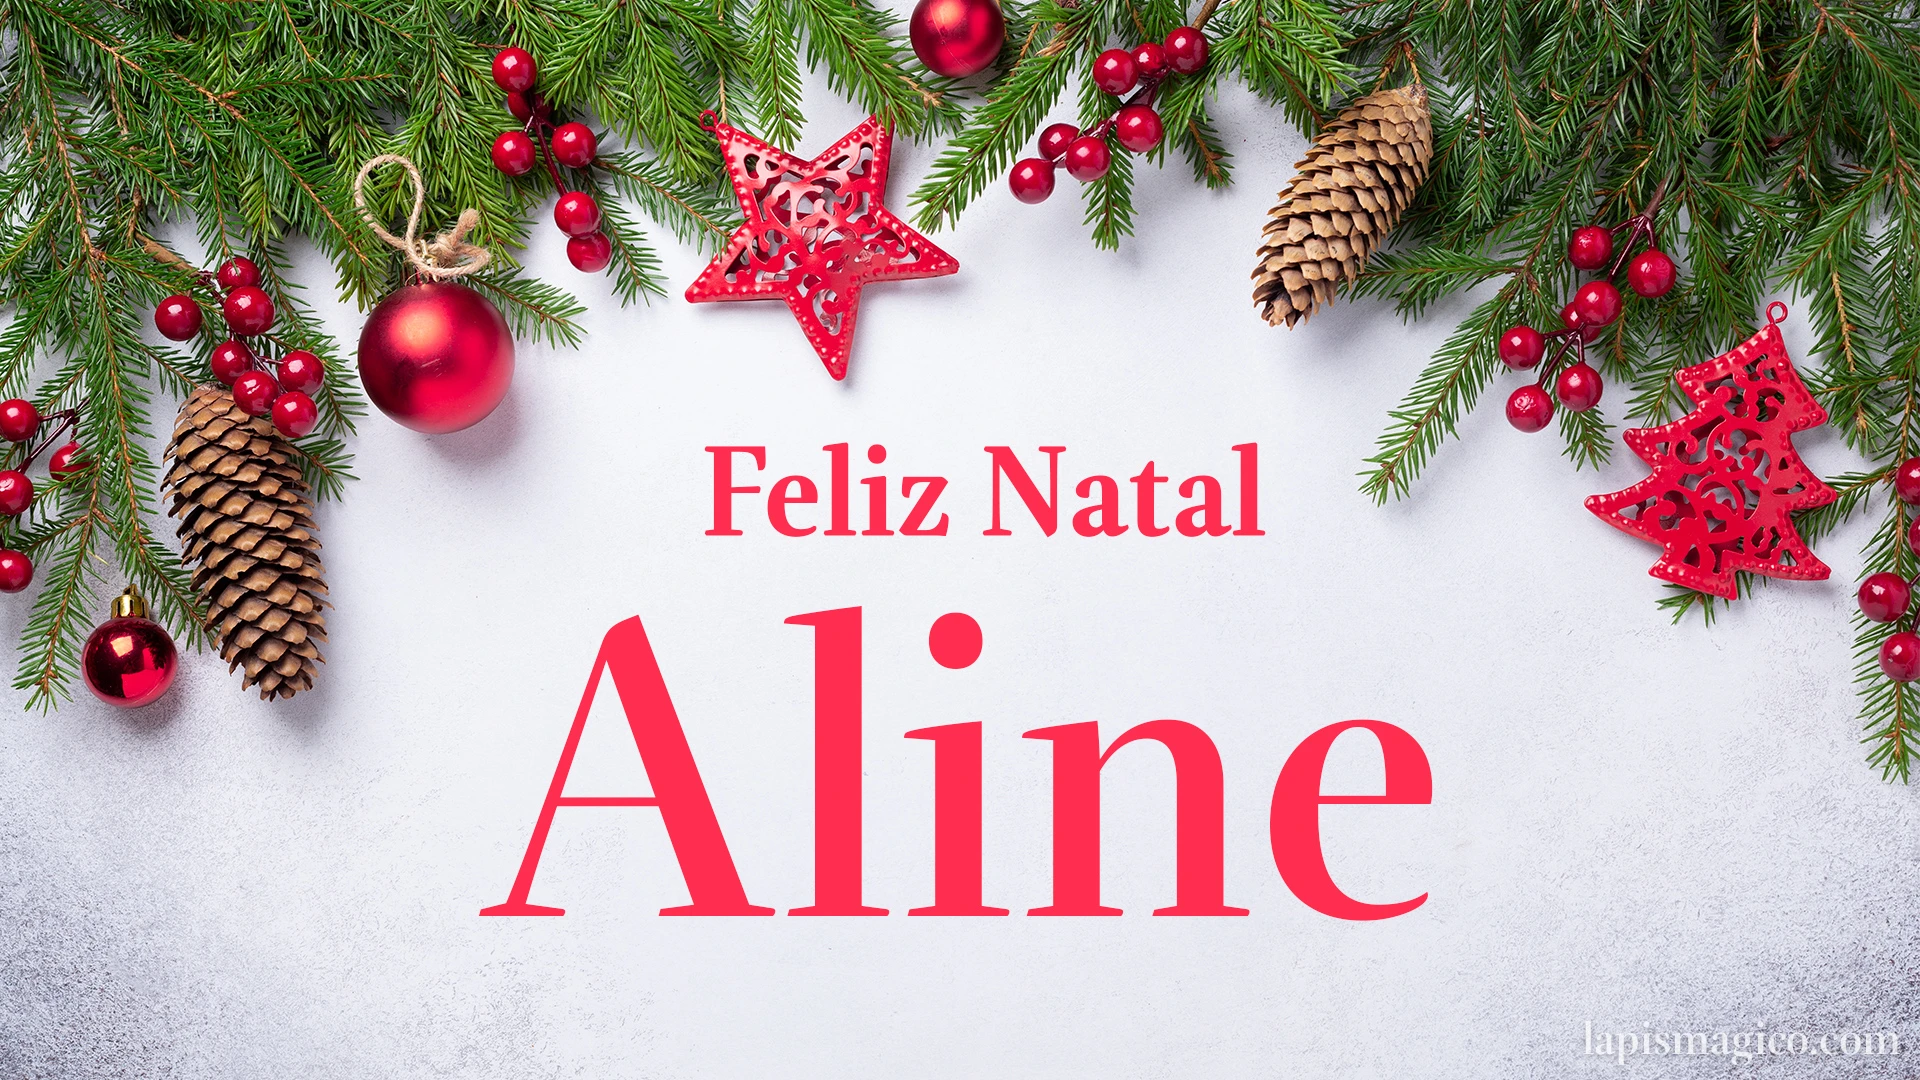 Oh Aline, cinco postais de Feliz Natal Postal com o teu nome